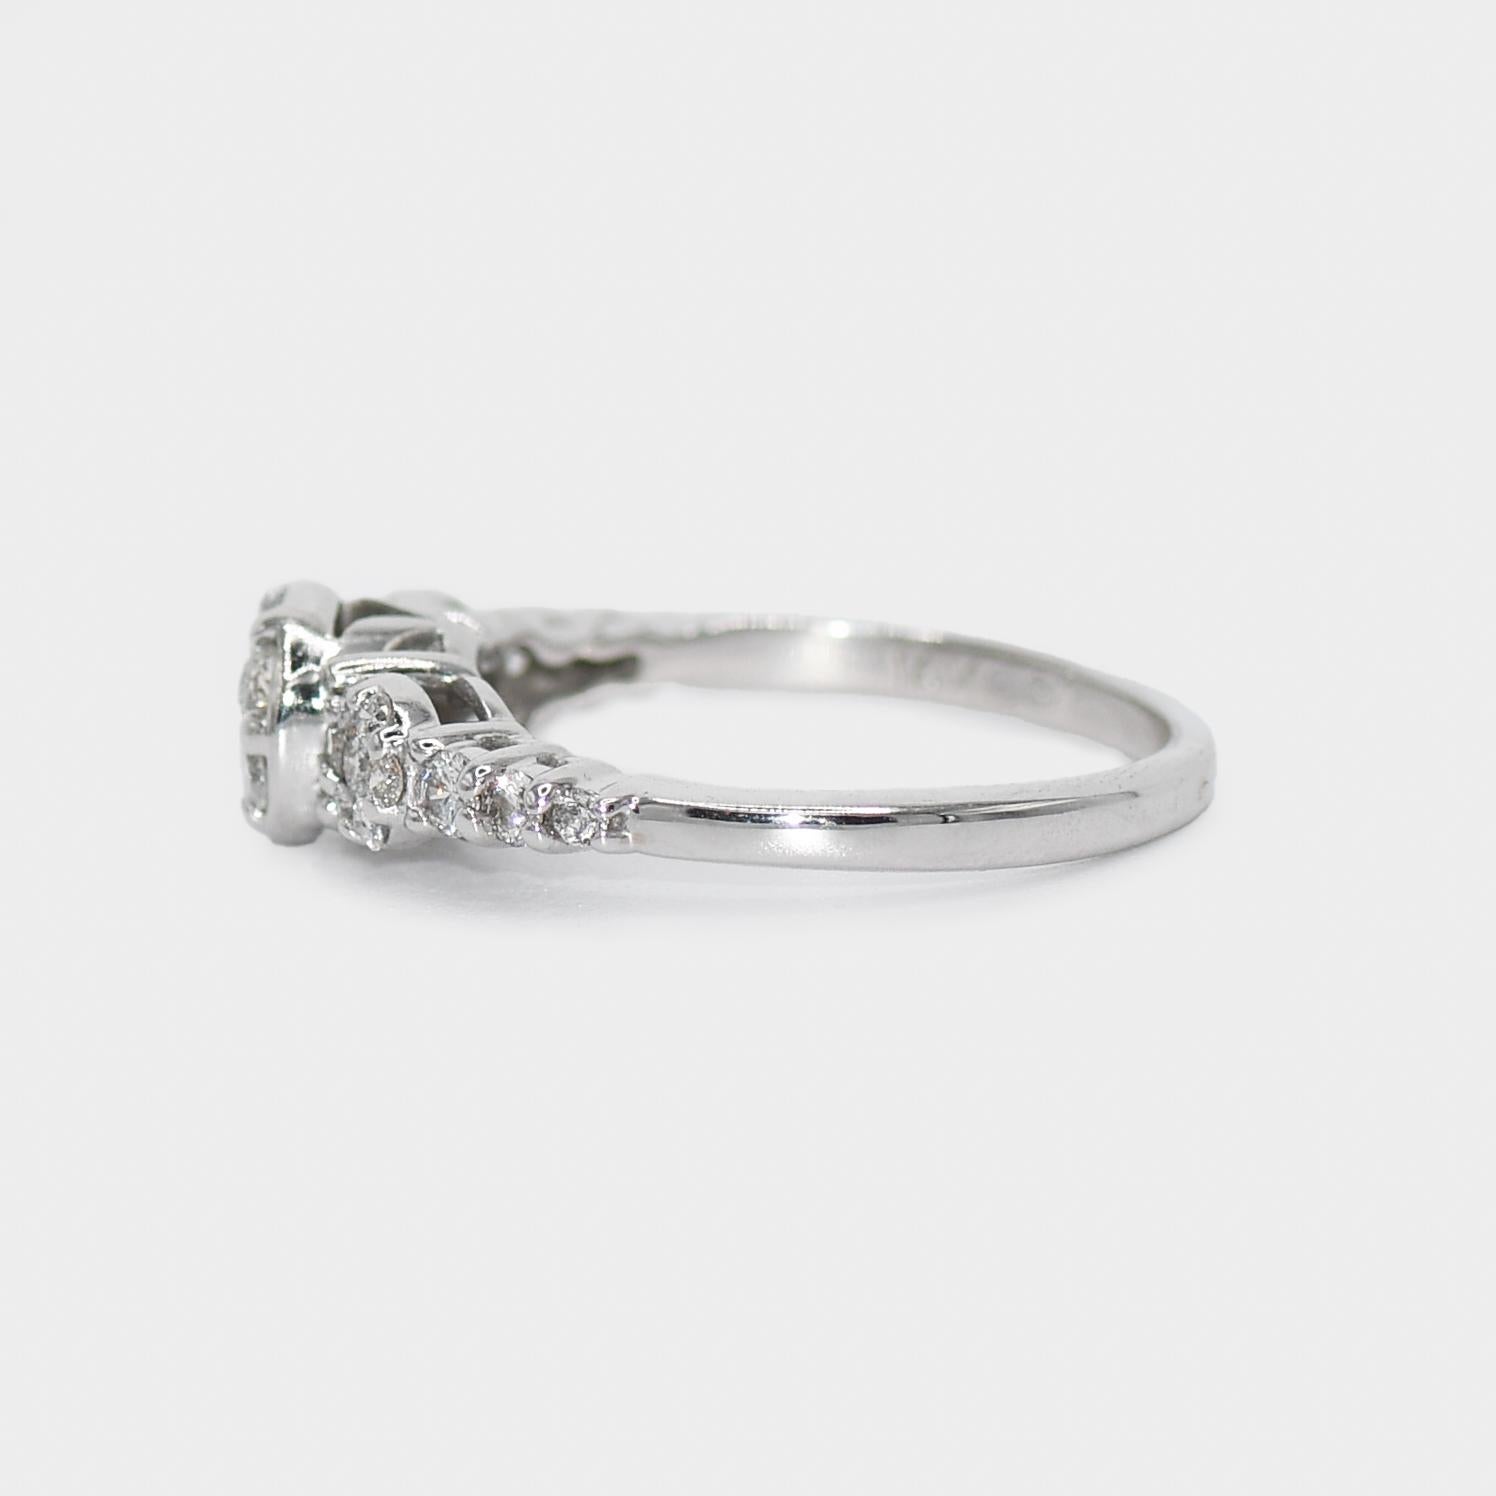 Women's or Men's 14K White Gold Ladies' Diamond Cluster Ring 0.40tdw, 2.6g For Sale